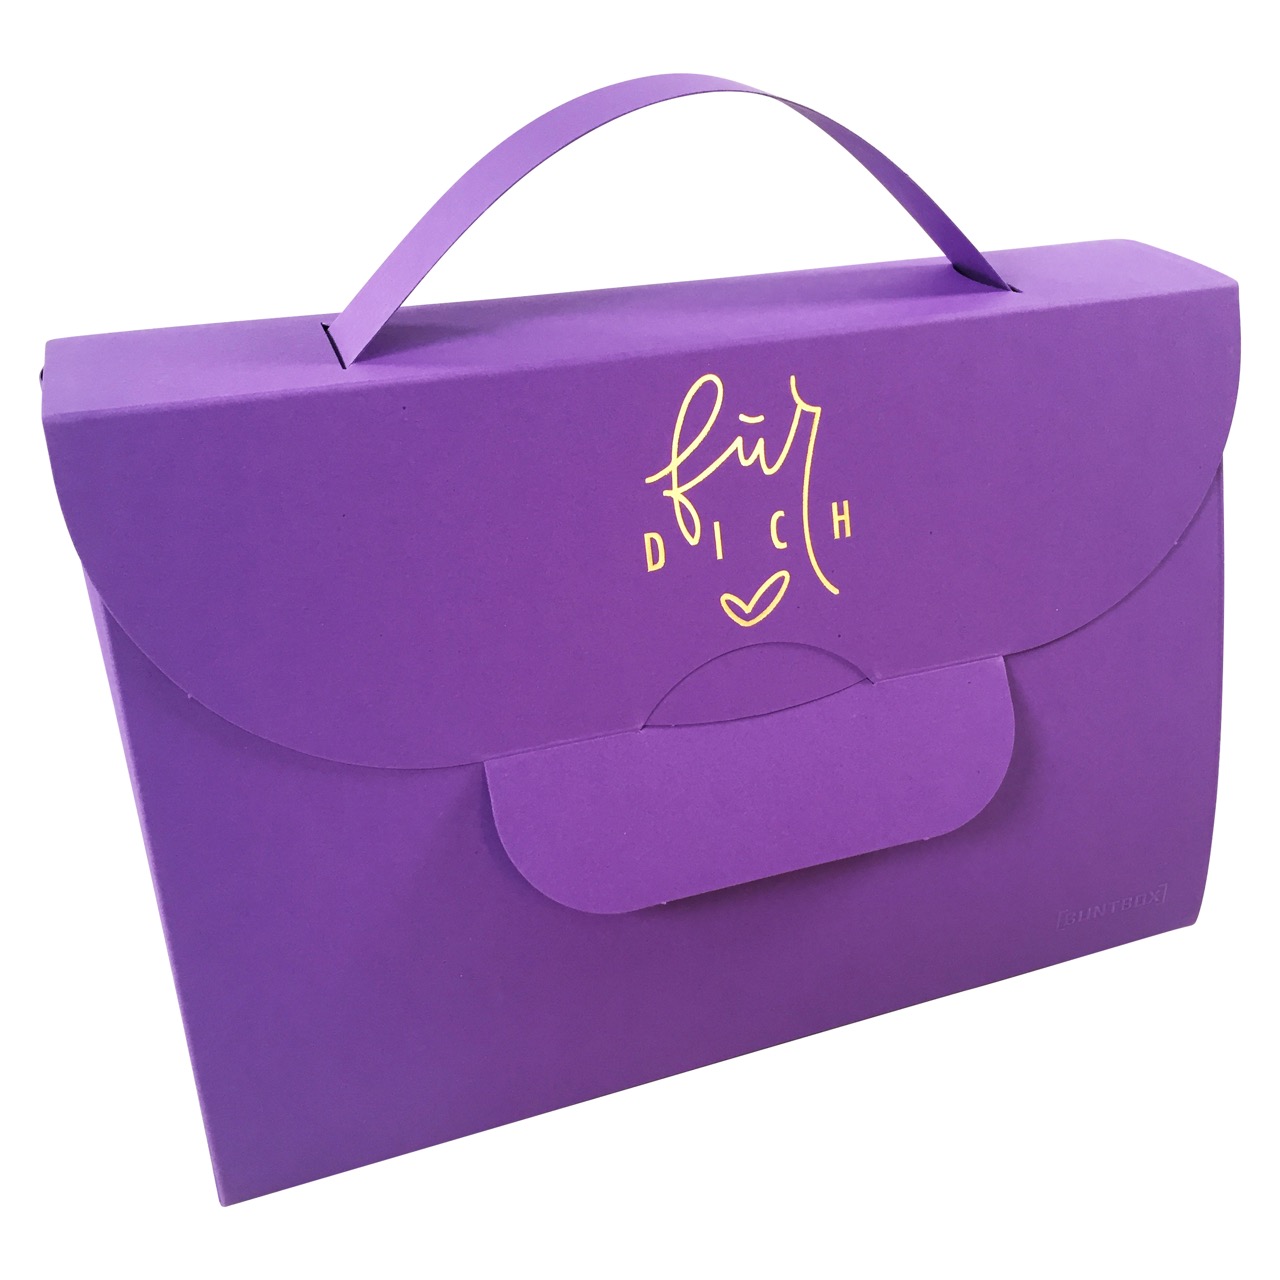 Handbag XL Für Dich in Lavendel